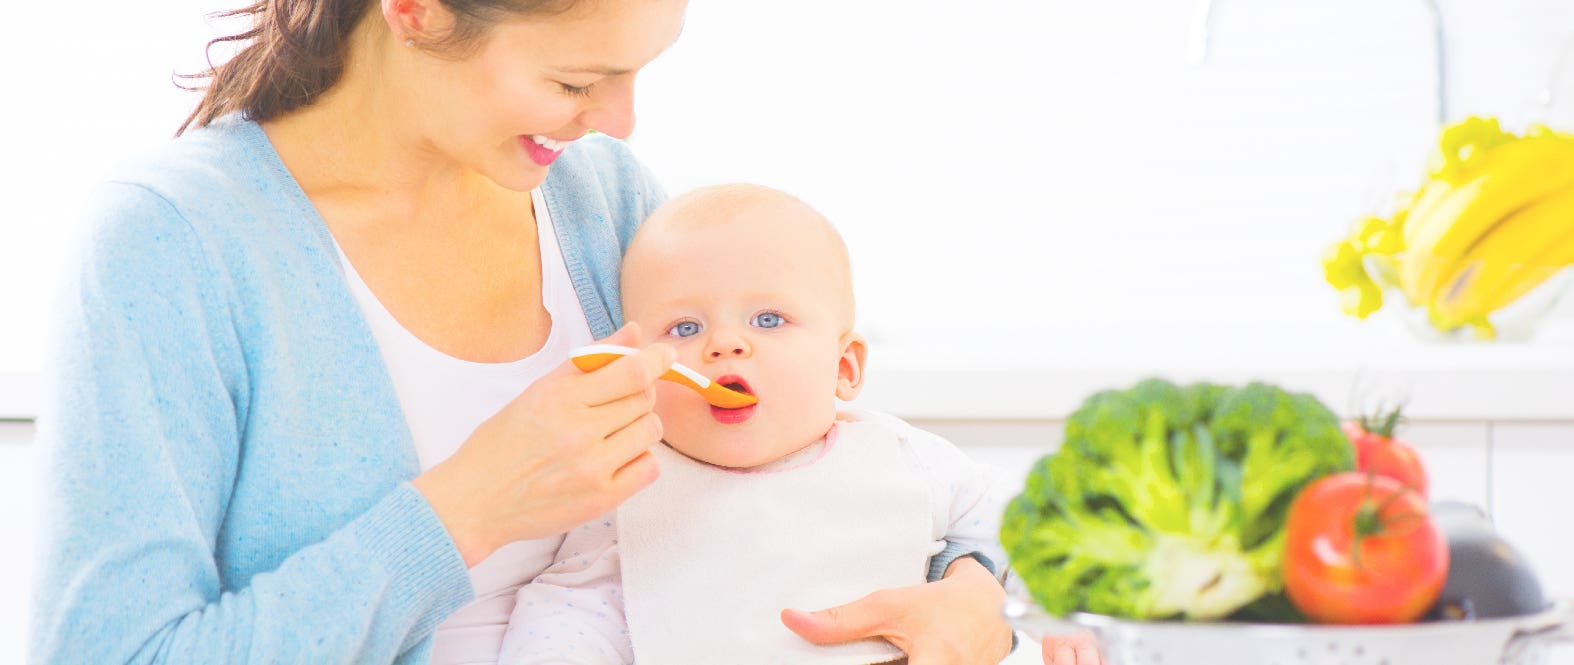 Su primera comida: ¿Qué alimentos puedo darle a mi bebé y cuáles no son recomendados?